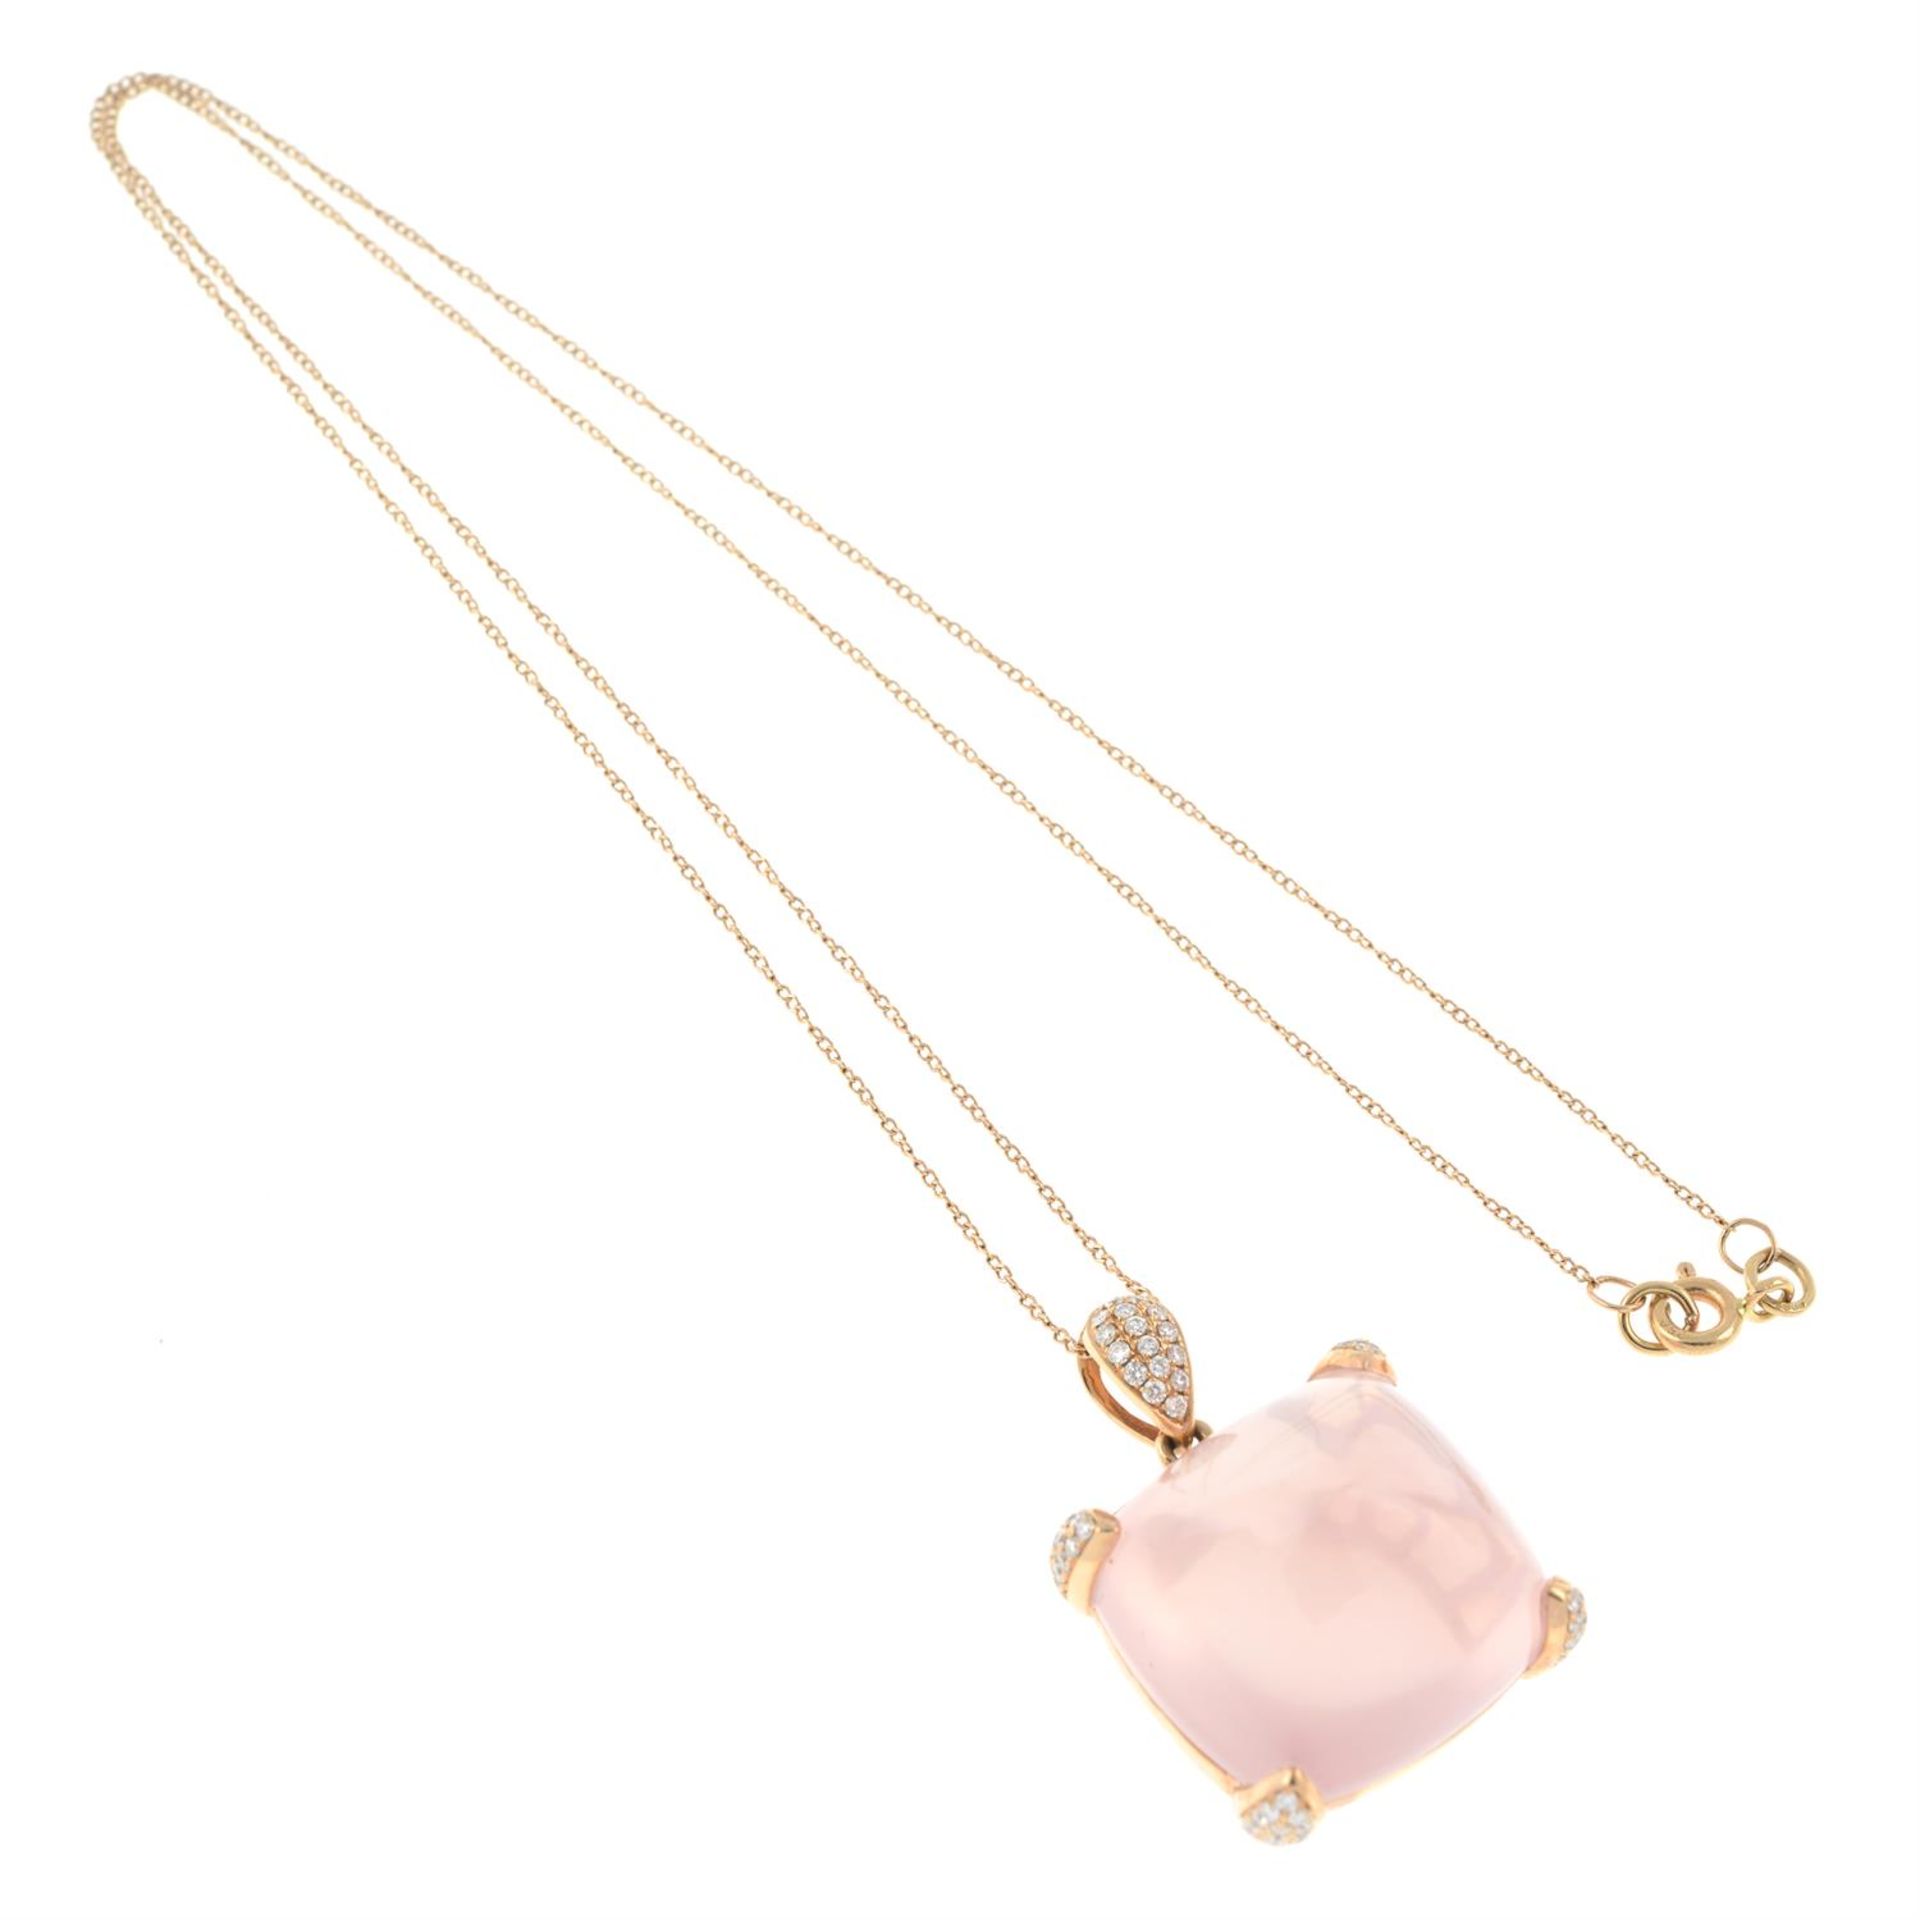 A rose quartz and pavé-set diamond pendant, with 18ct gold chain. - Bild 5 aus 6